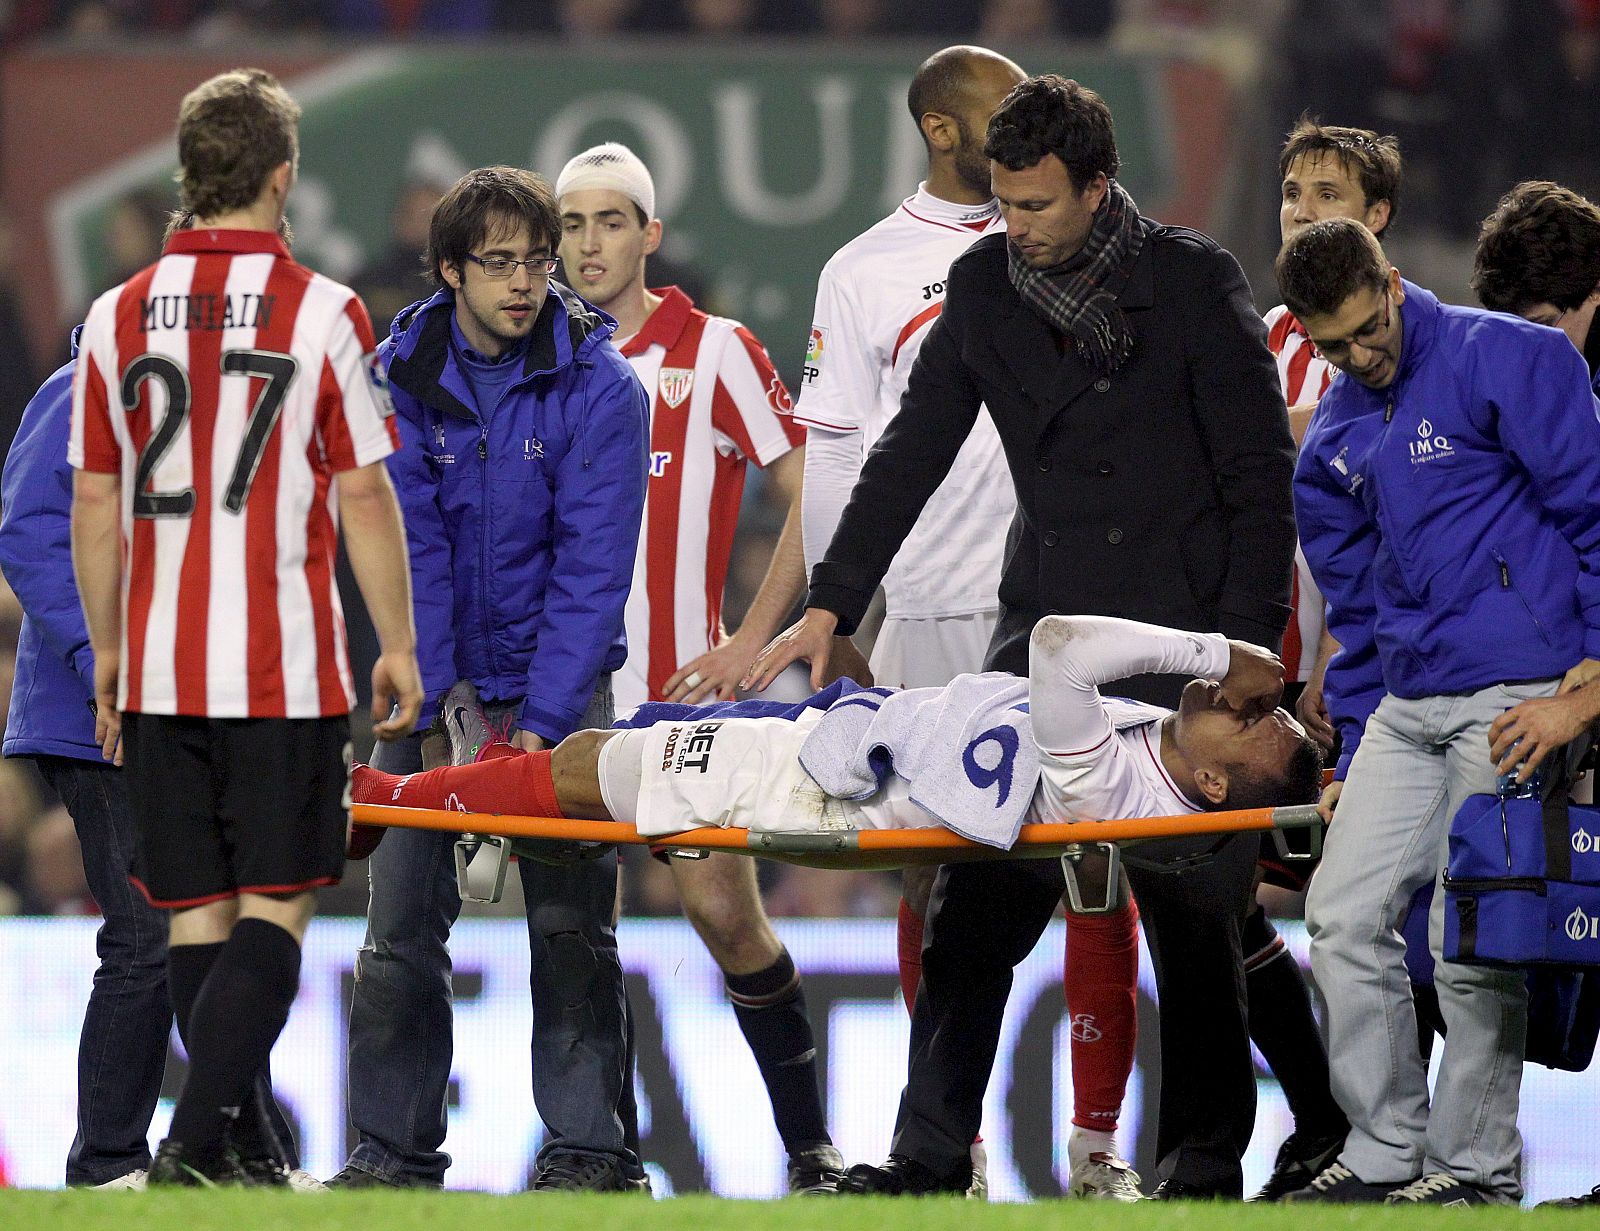 El delantero brasileño del Sevilla CF Luis Fabiano es retirado en camilla tras su lesión